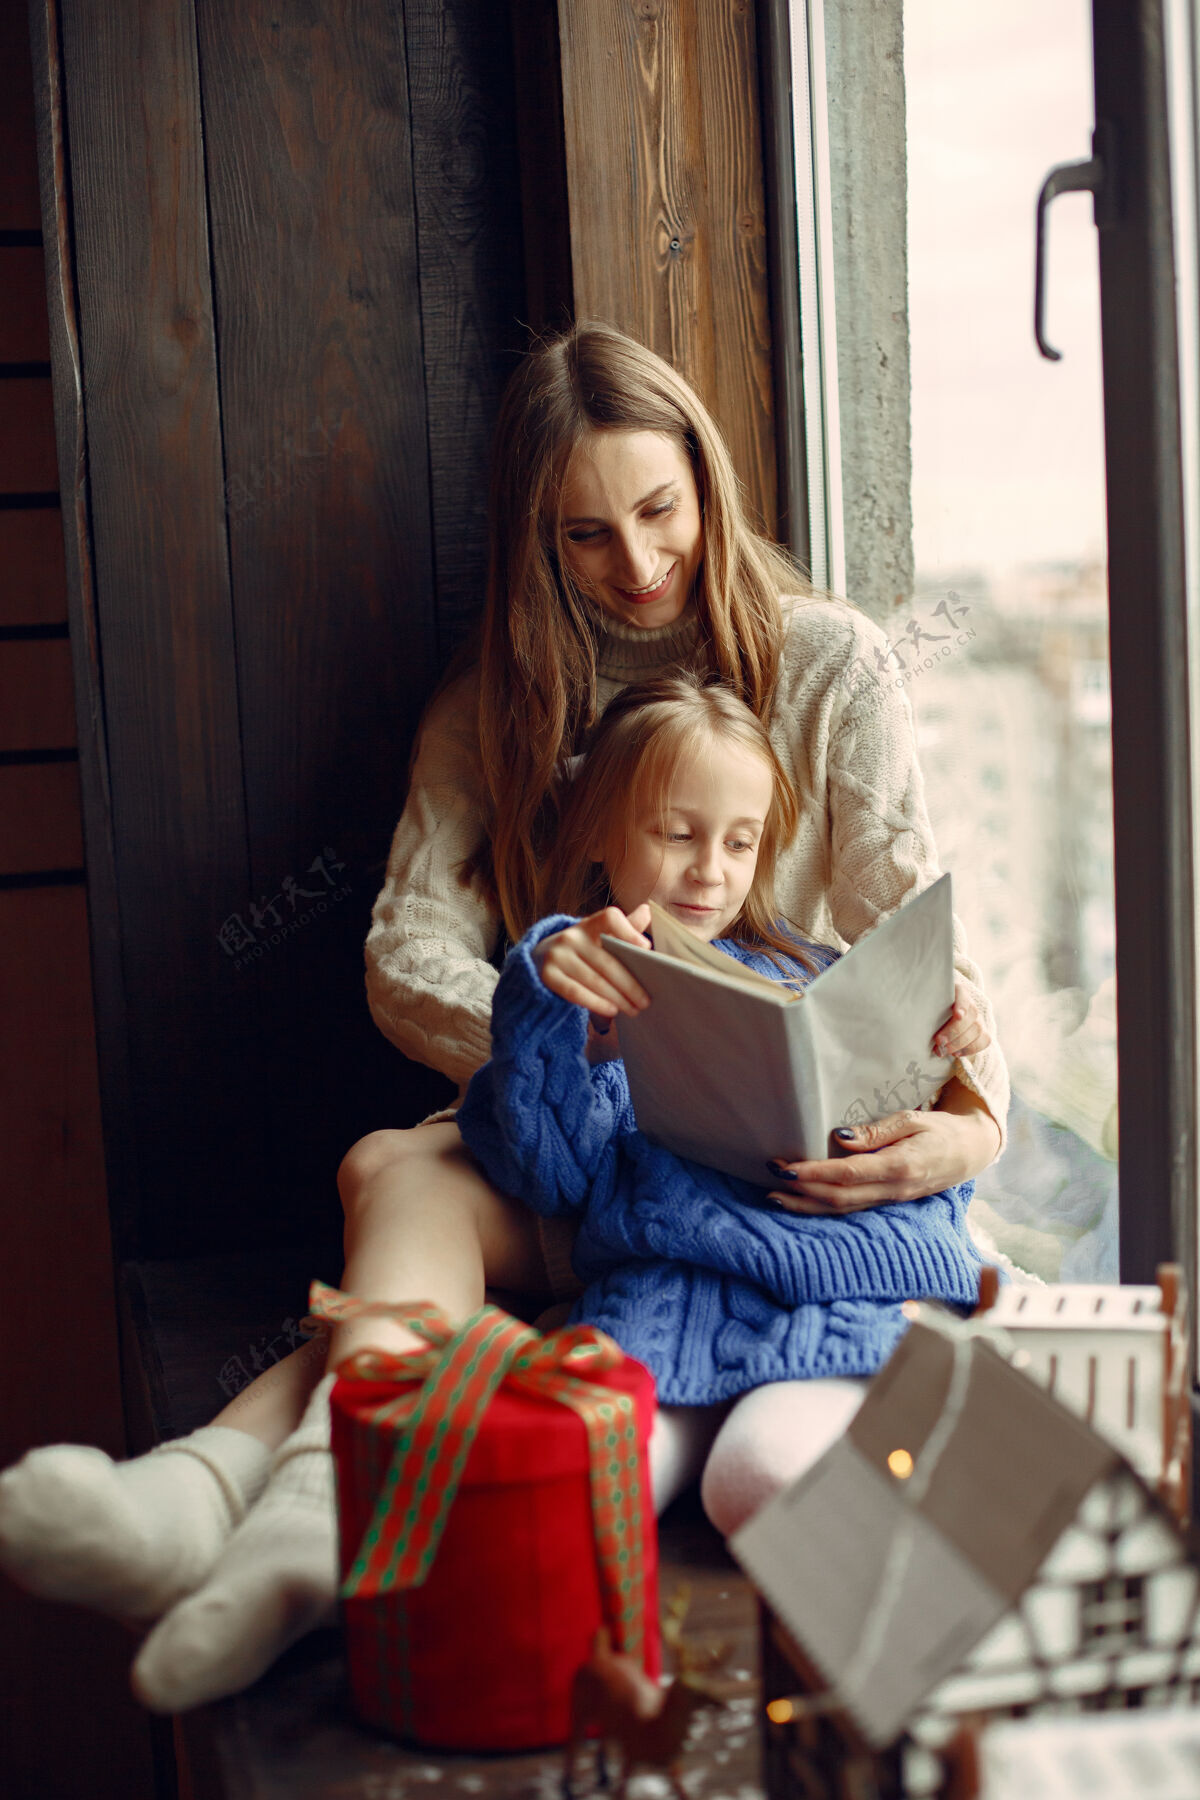 圣诞节人们在为圣诞节做准备母亲在和女儿玩耍一家人在节日的房间里休息孩子穿着蓝色毛衣装饰孩子装饰